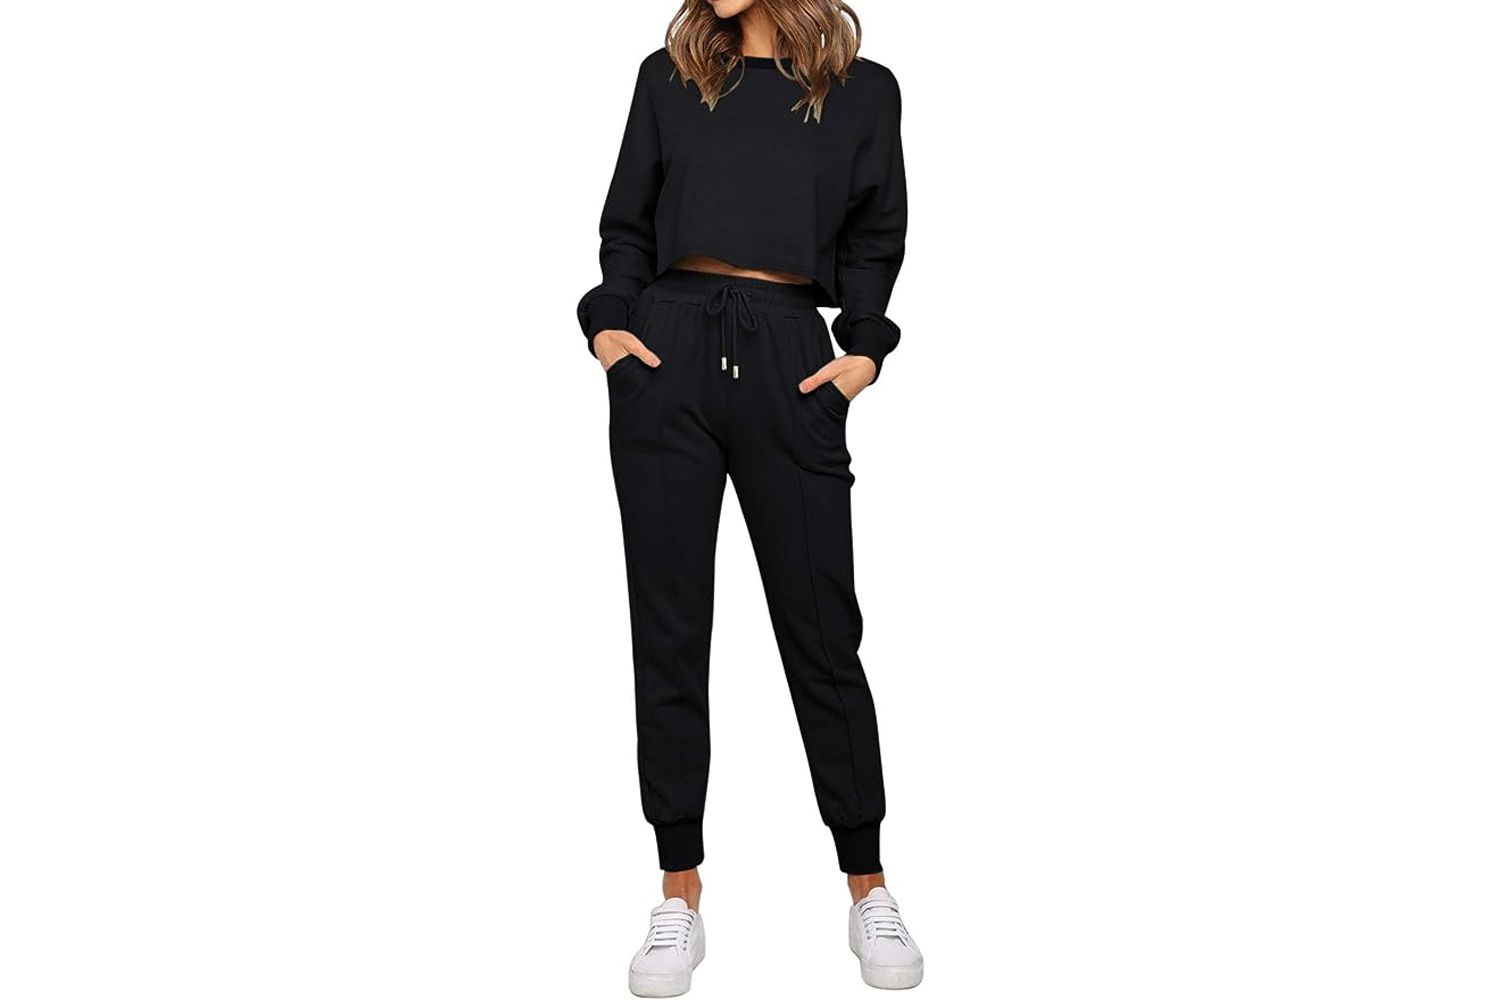 Amazon ZESICA Women's Long Sleeve Crop Top and Pants Pajama Sets